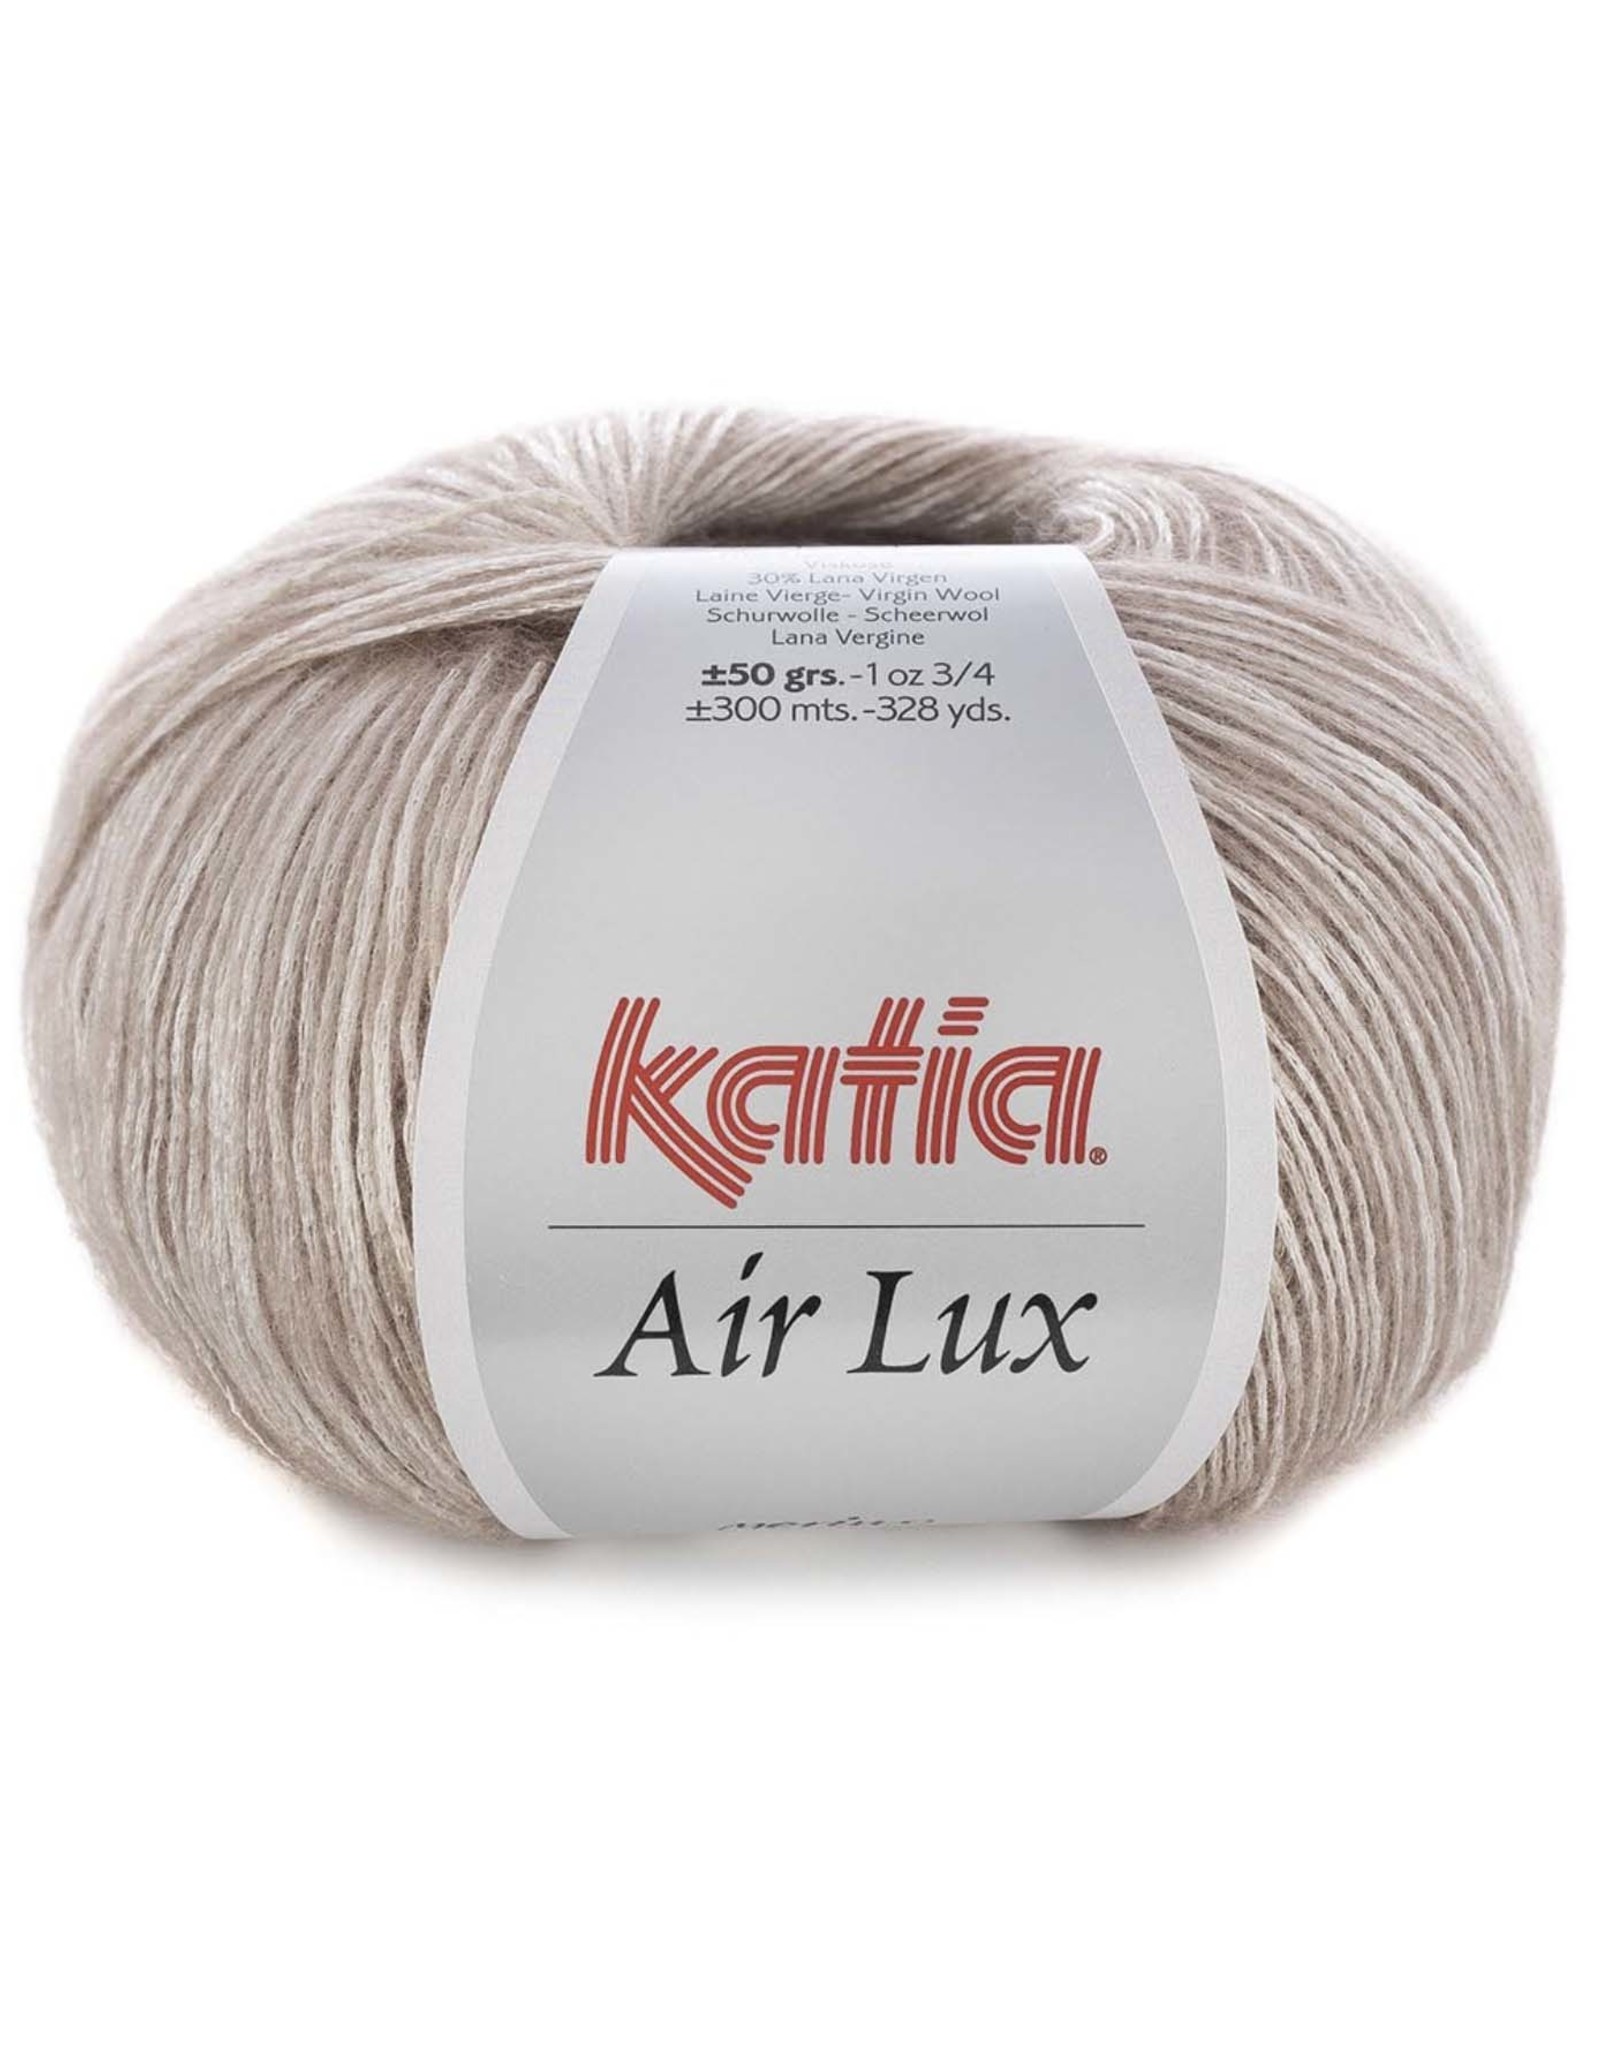 Katia Air Lux